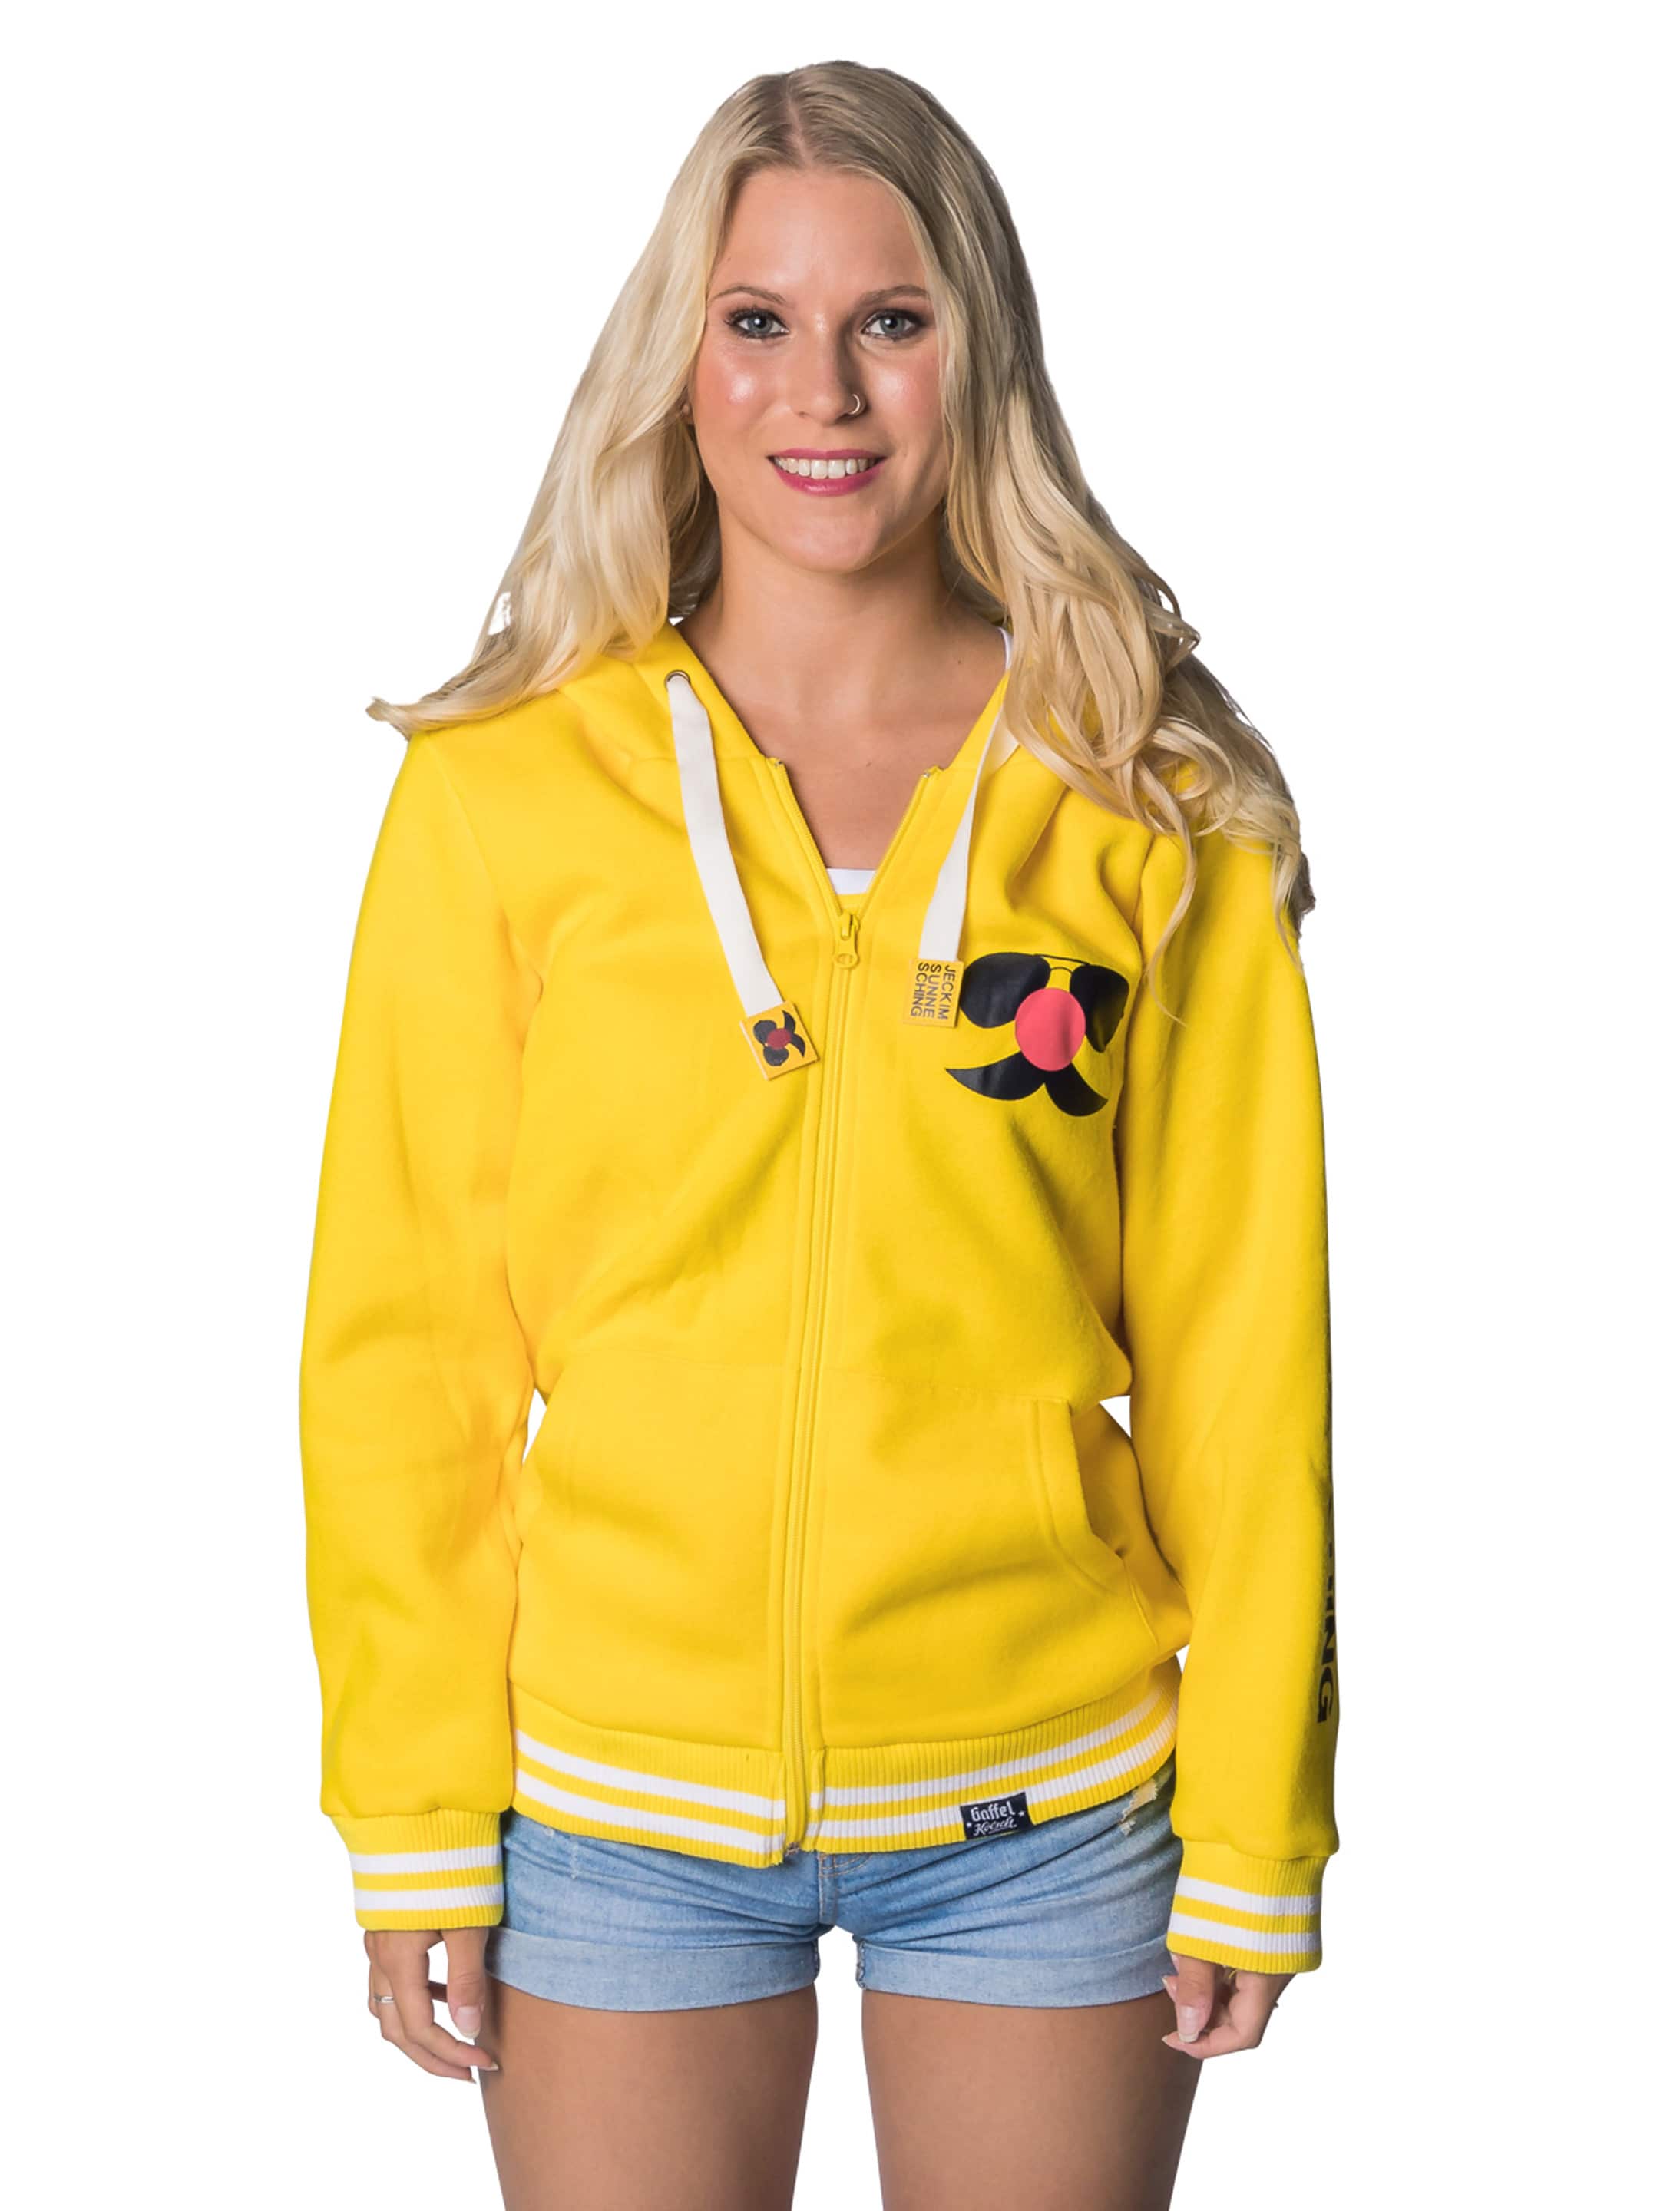 Sweatshirt Jacke Jeck im Sunnesching Unisex gelb 3XL/4XL